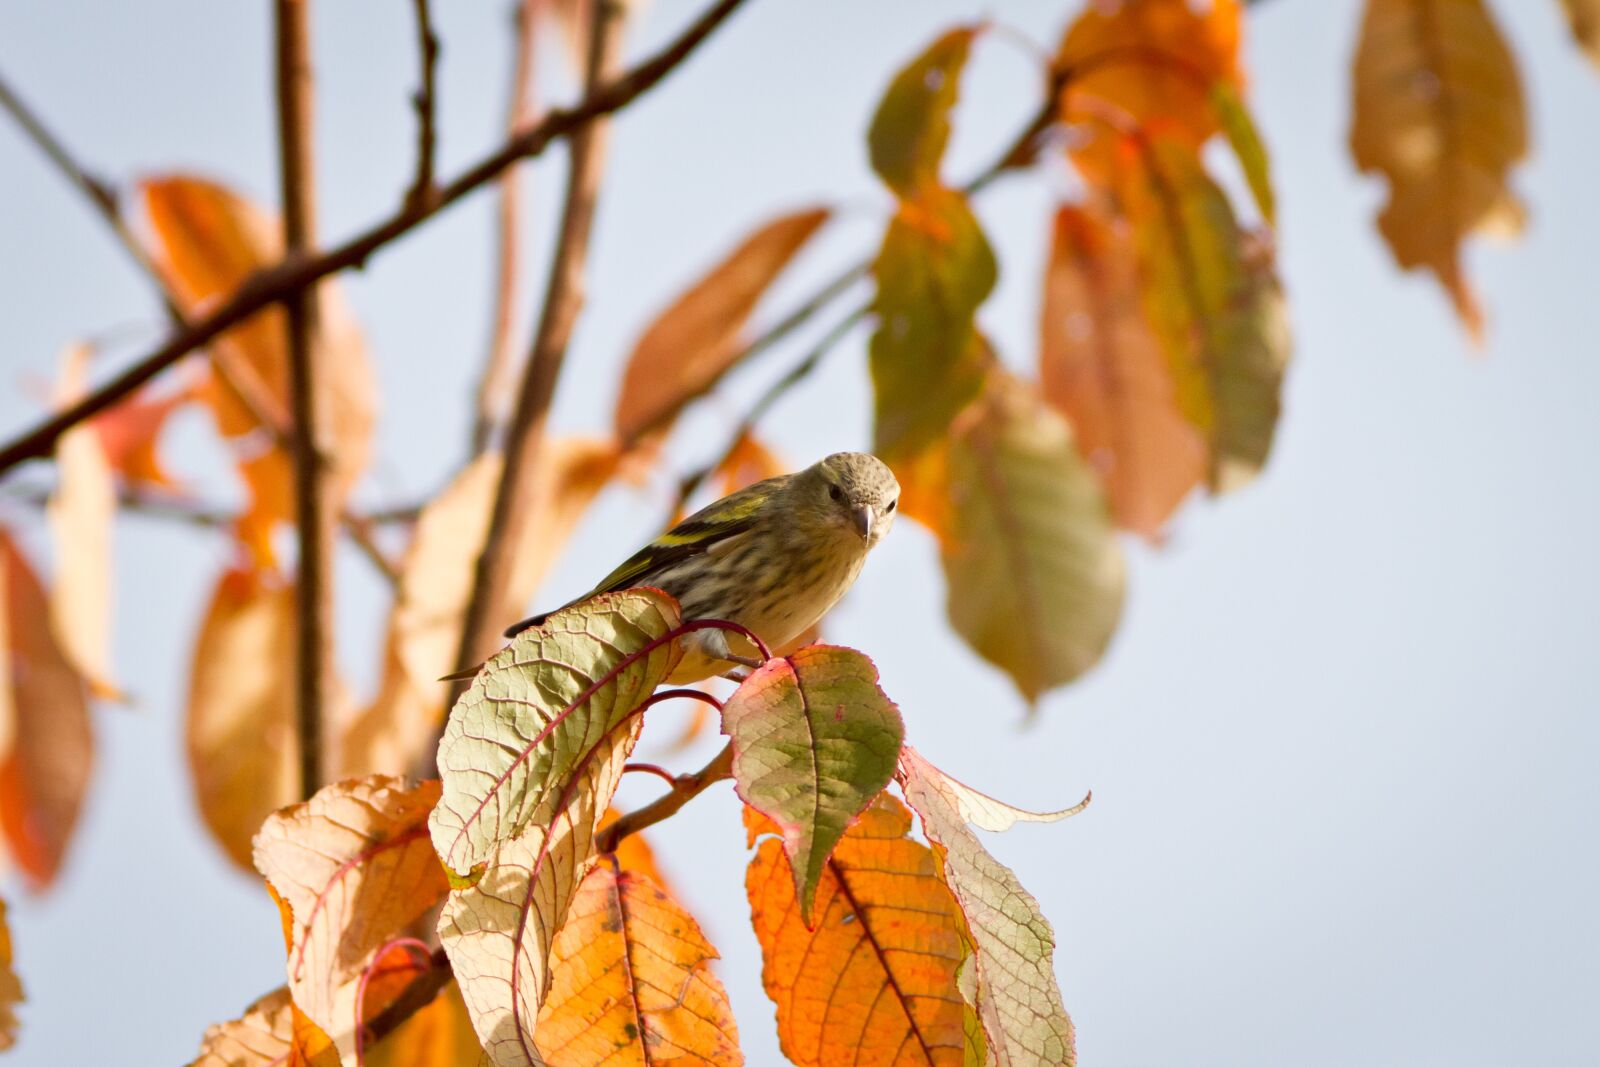 Canon EOS 7D sample photo. Green sparrow, autumn, nature photography